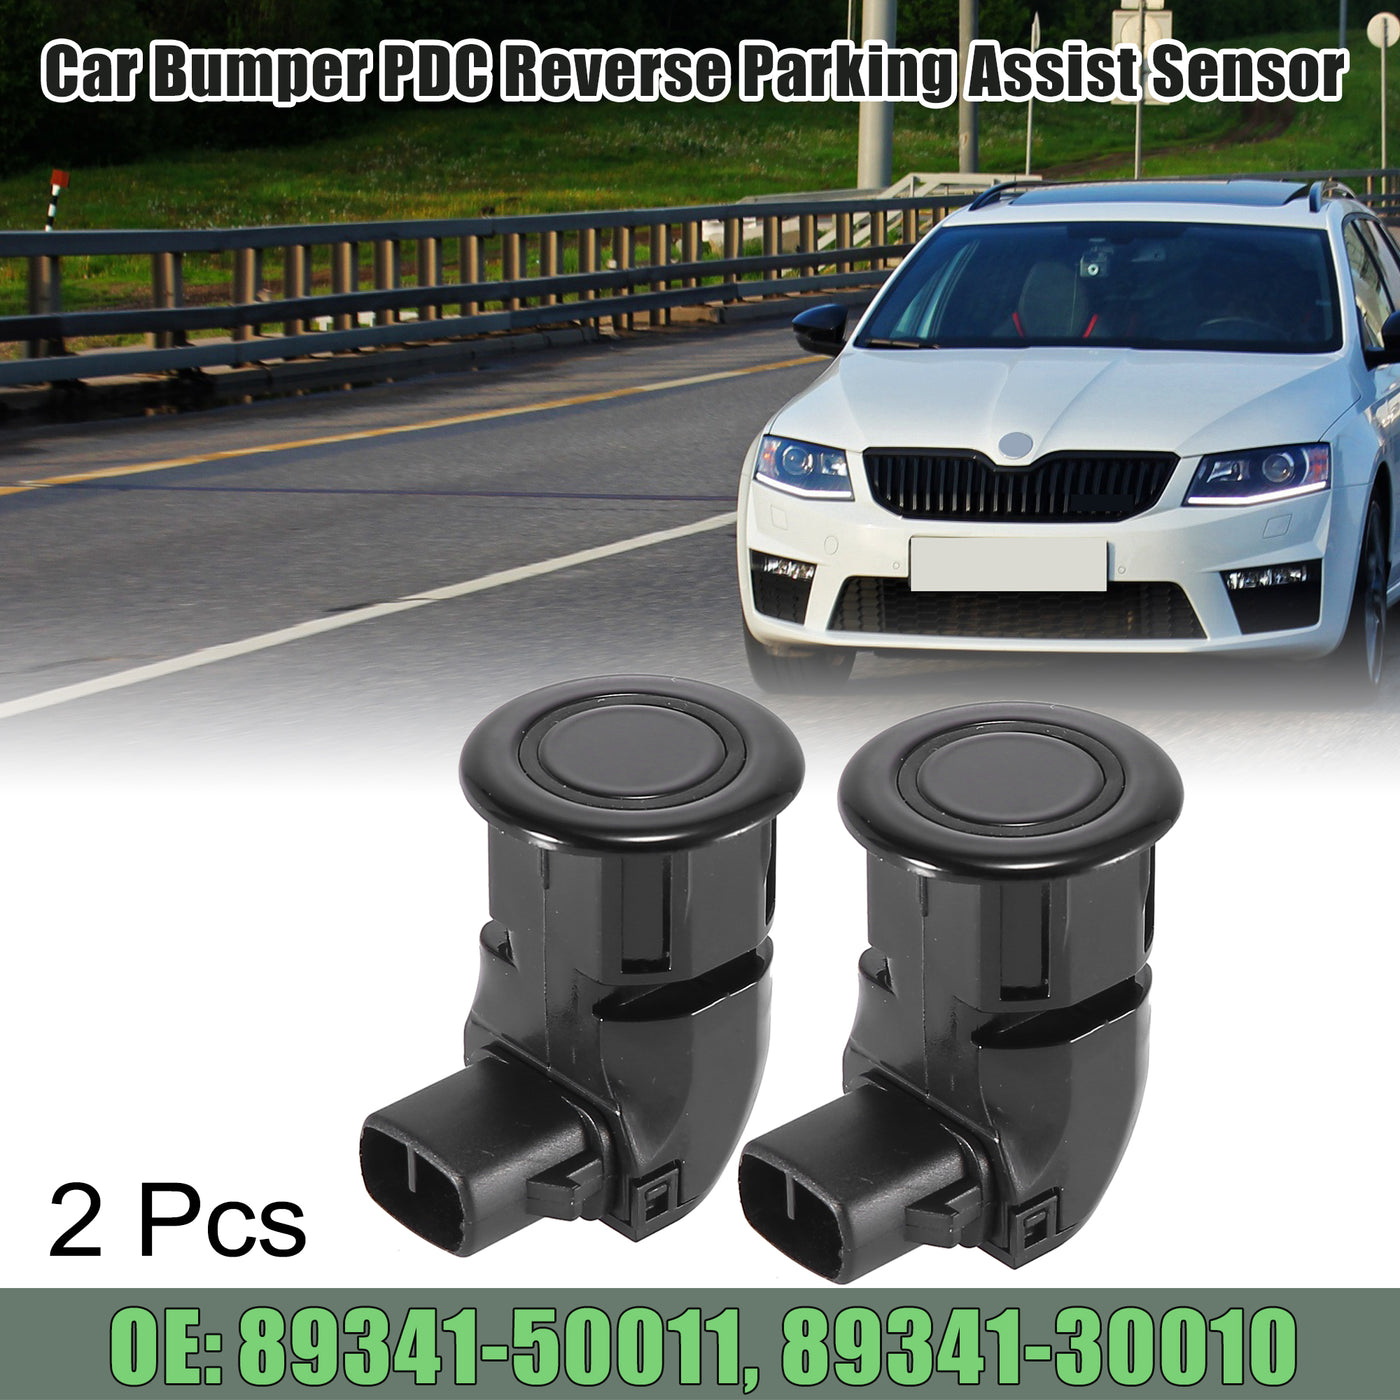 X AUTOHAUX 2pcs Car Bumper PDC Reverse Parking Assist Sensor for Lexus ISF IS250 IS350 GS350 89341-30010-C0